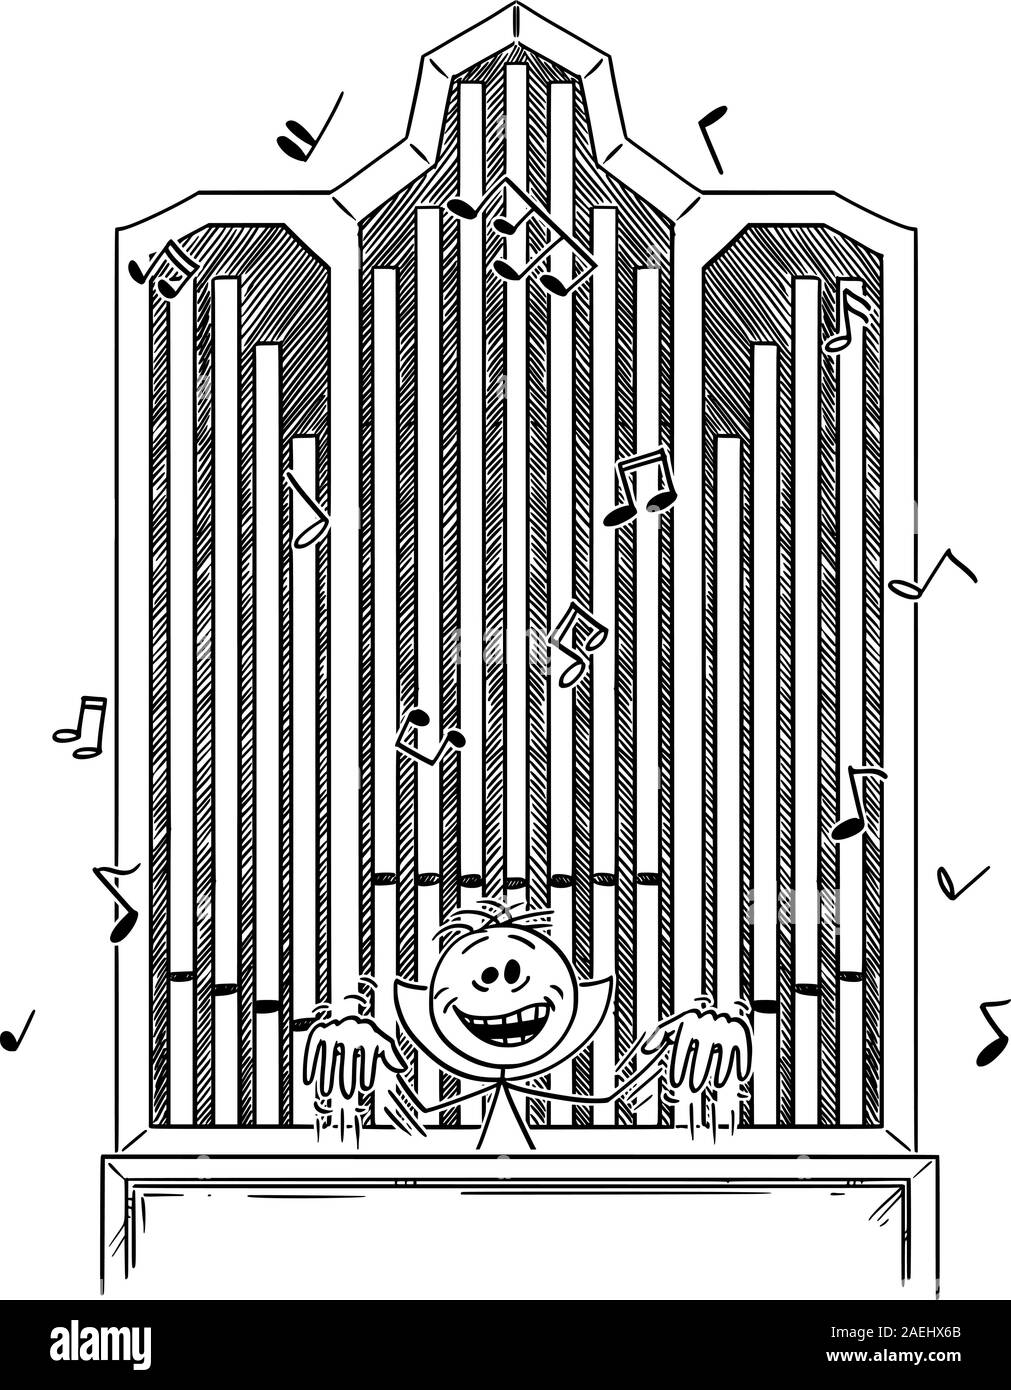 Vector cartoon stick figure dessin illustration conceptuelle du mal fou fou fou ou rire et jouer de la musique sur l'orgue. Illustration de Vecteur